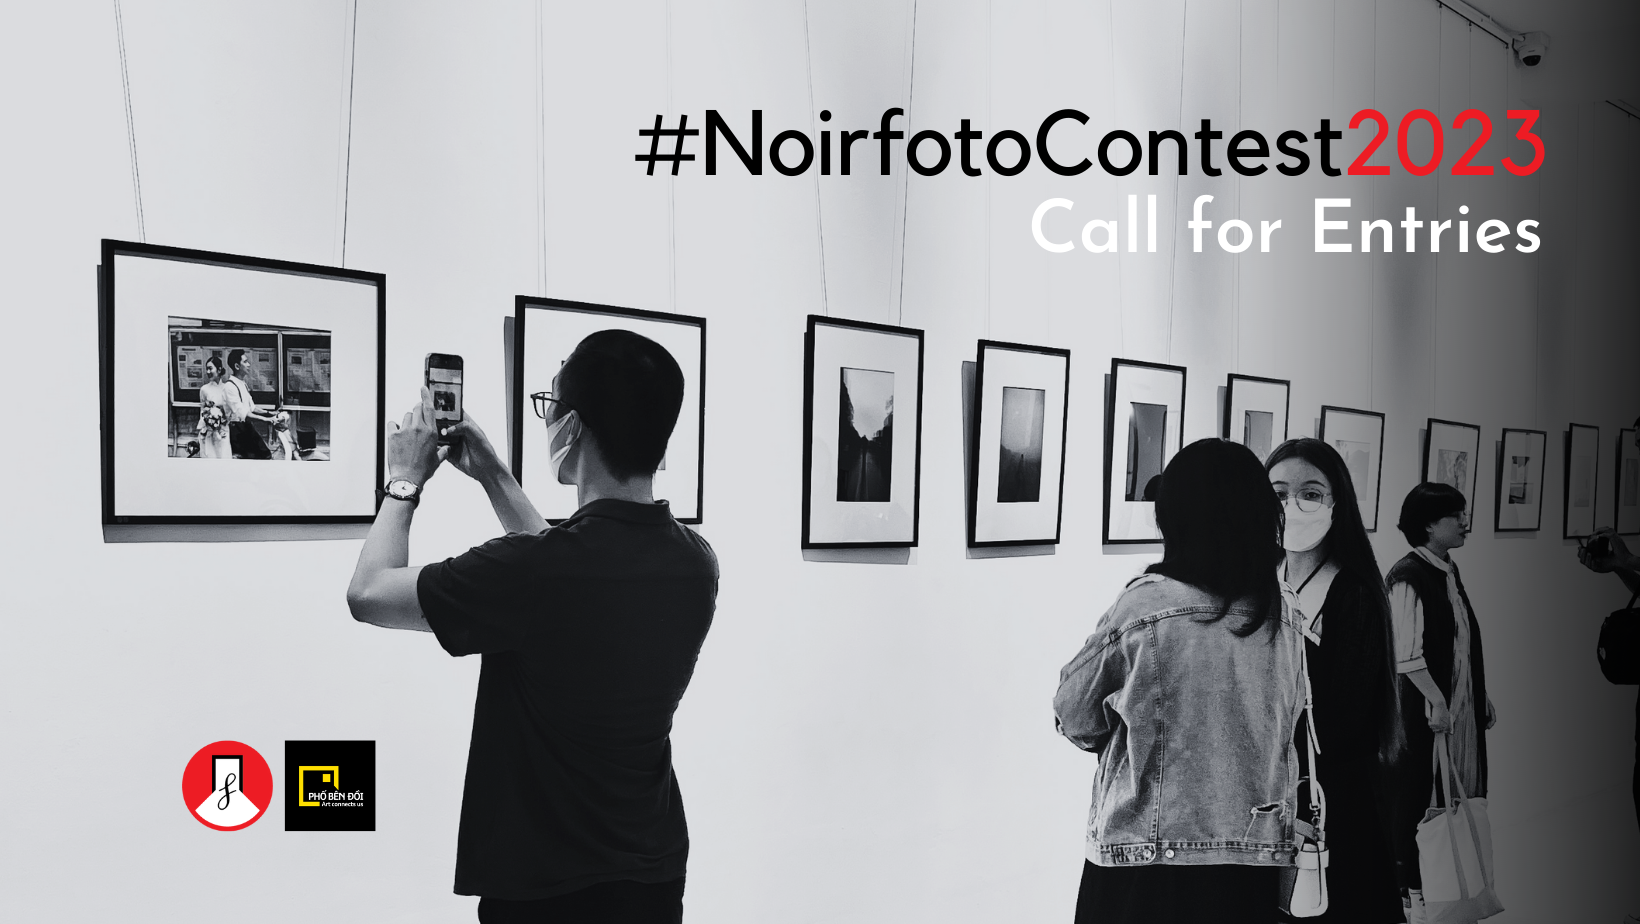 Noirfoto Contest 2023